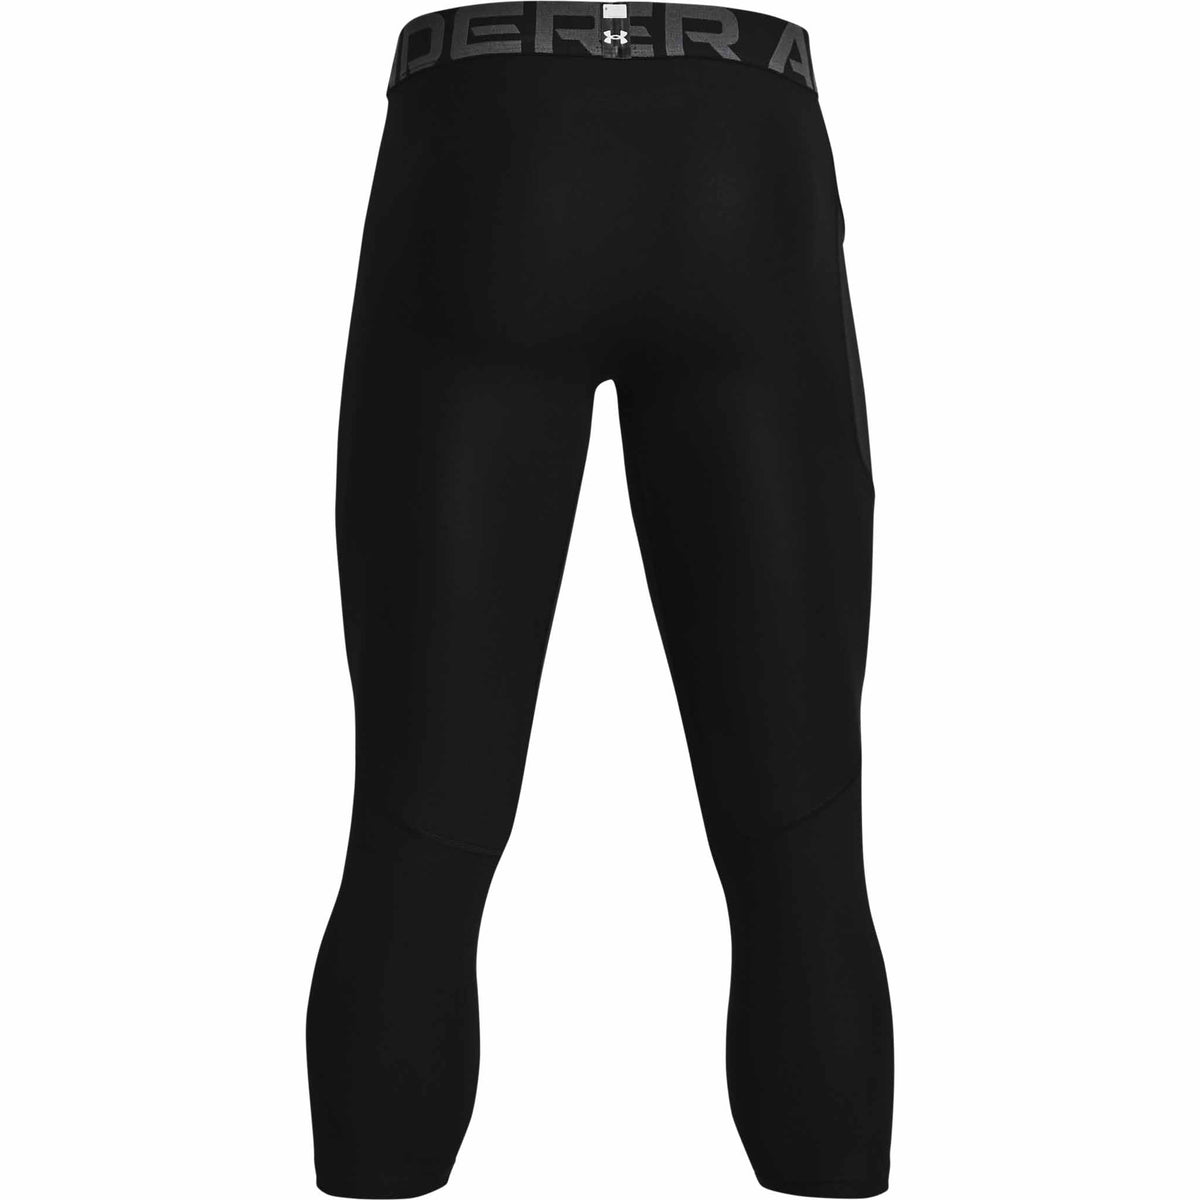 Under Armour HeatGear Armour Leggings 3/4 pantalons de compression pour homme - Noir